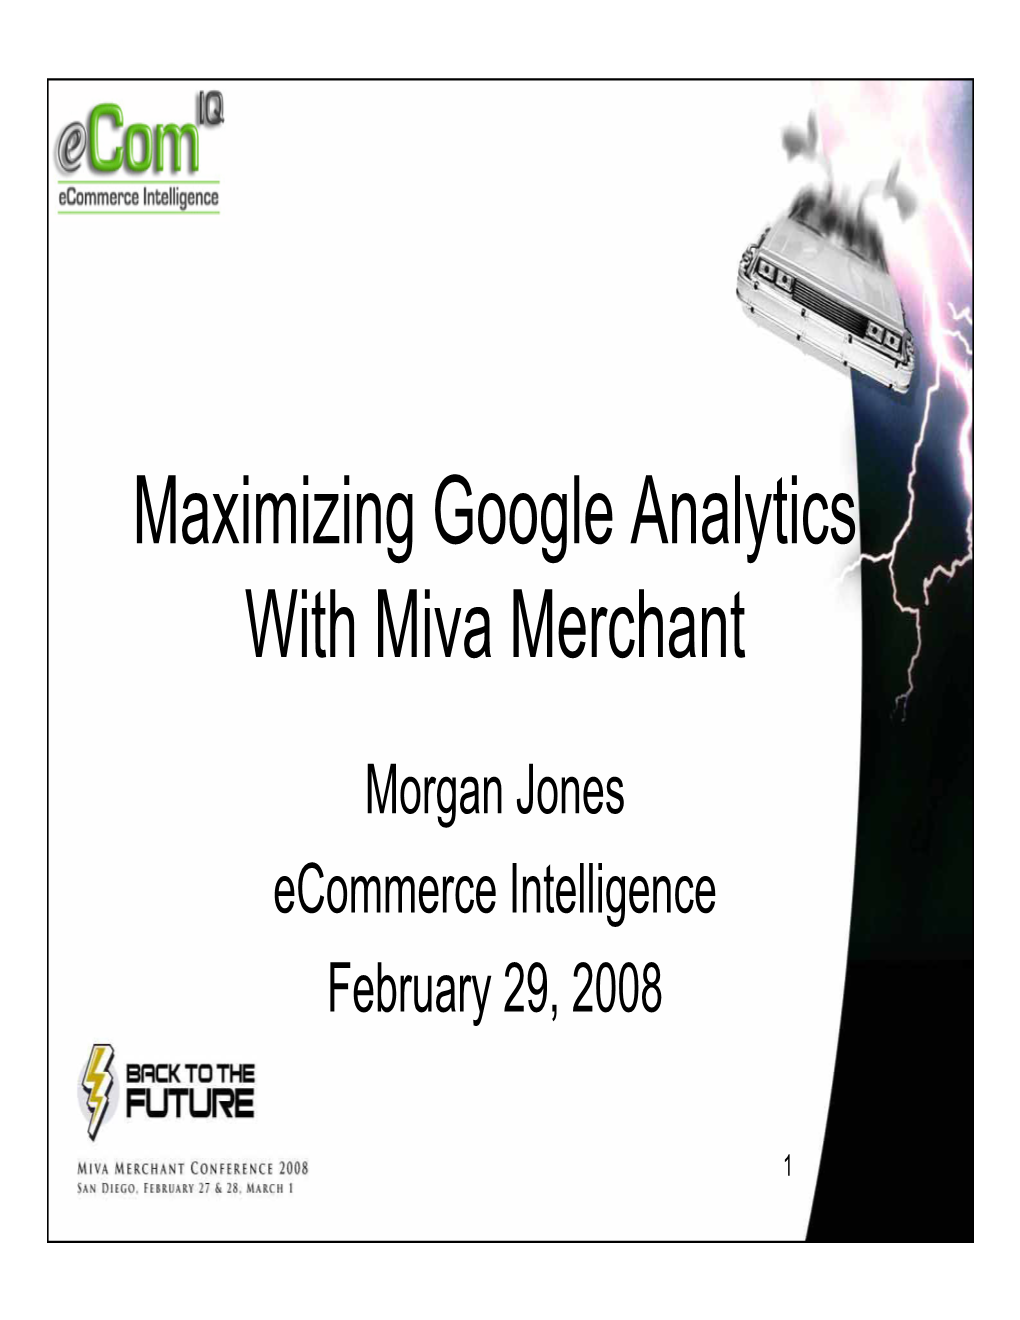 Maximizing Google Analytics with Miva Merchant